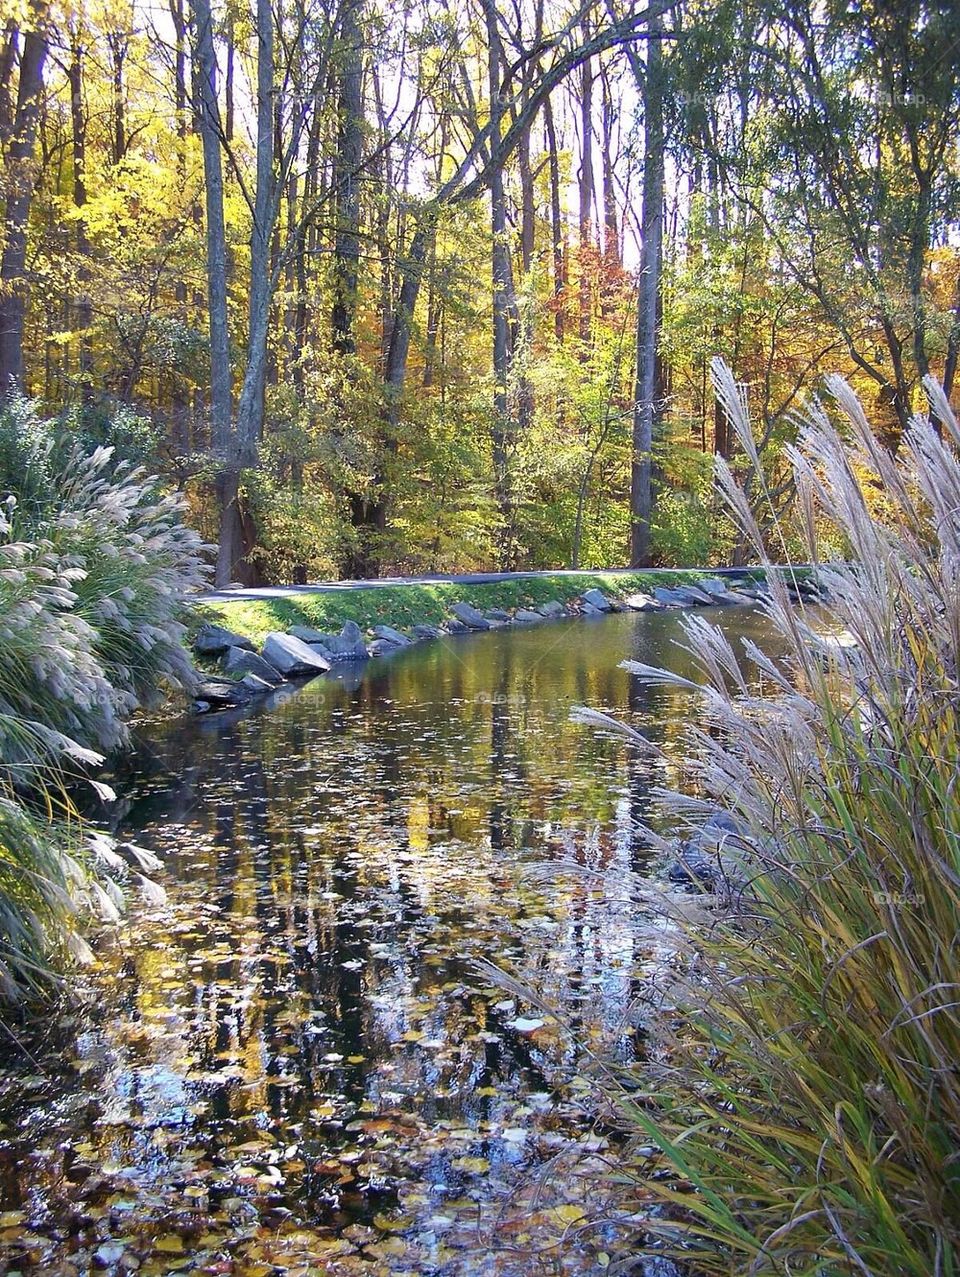 Autumn stream